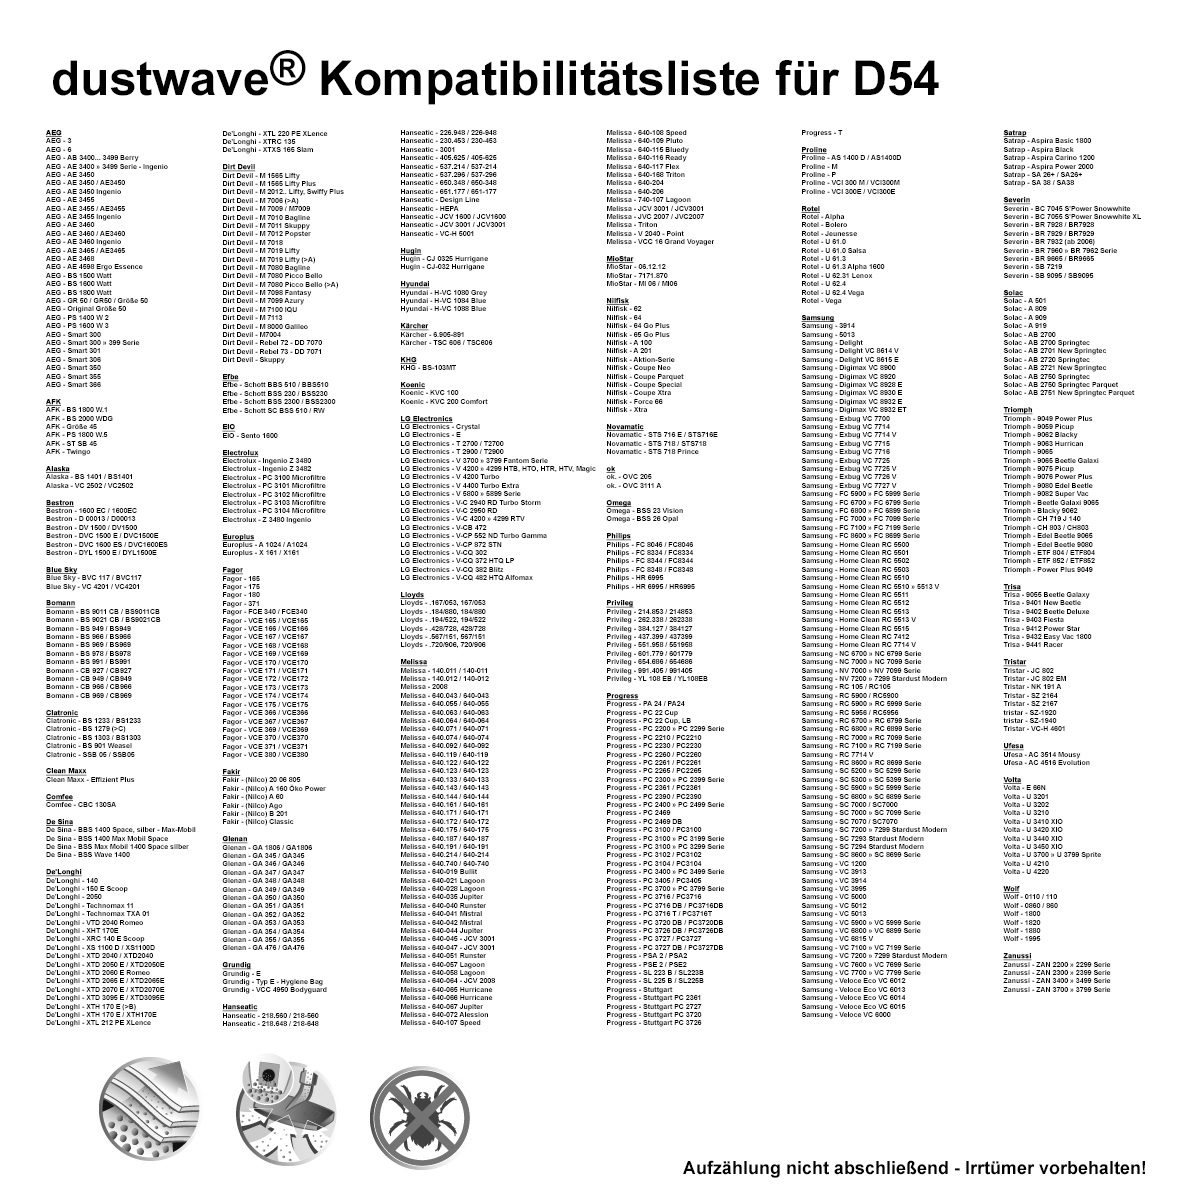 Dustwave® 10 Staubsaugerbeutel für Alaska BS 1401 / BS1401 - hocheffizient, mehrlagiges Mikrovlies mit Hygieneverschluss - Made in Germany